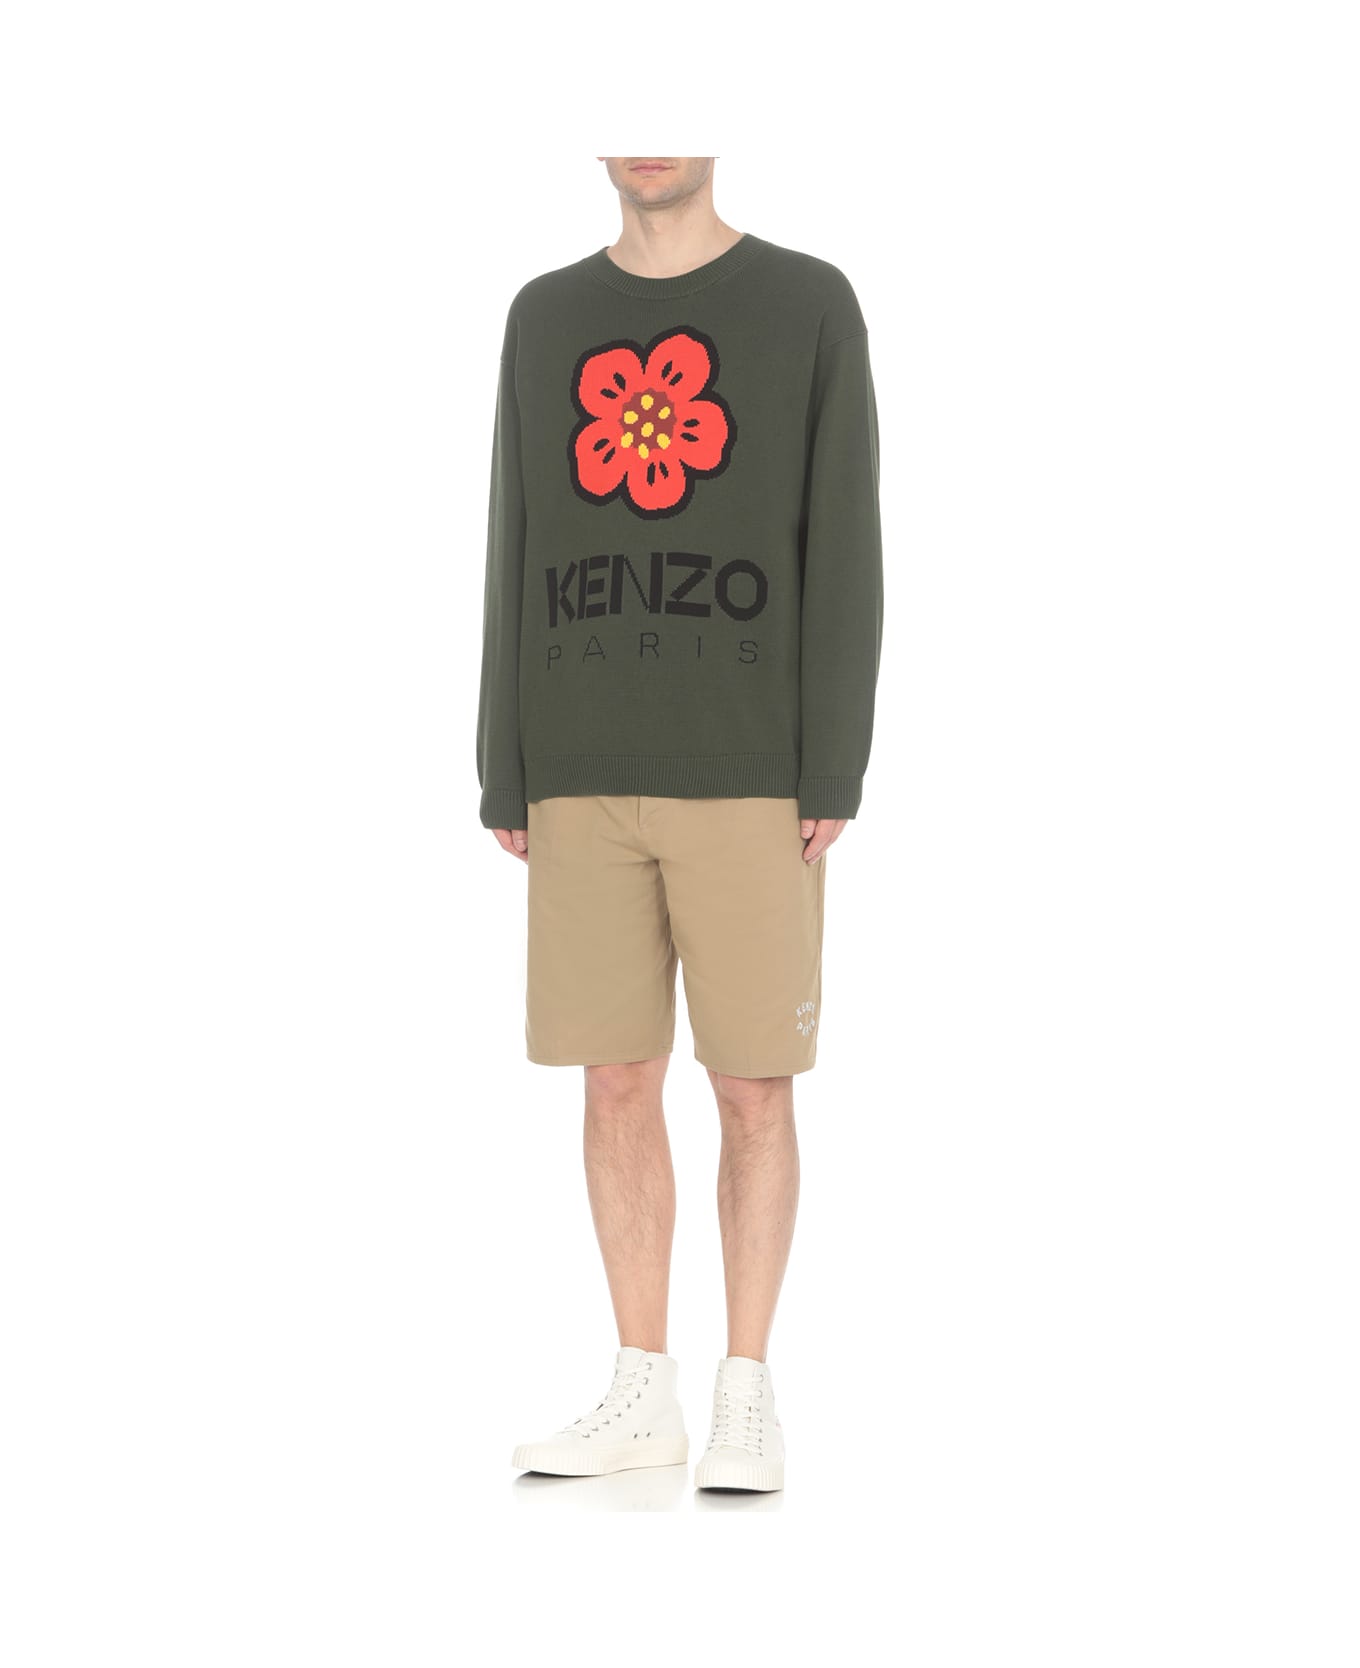 Kenzo Boke Flower Sweater - Green